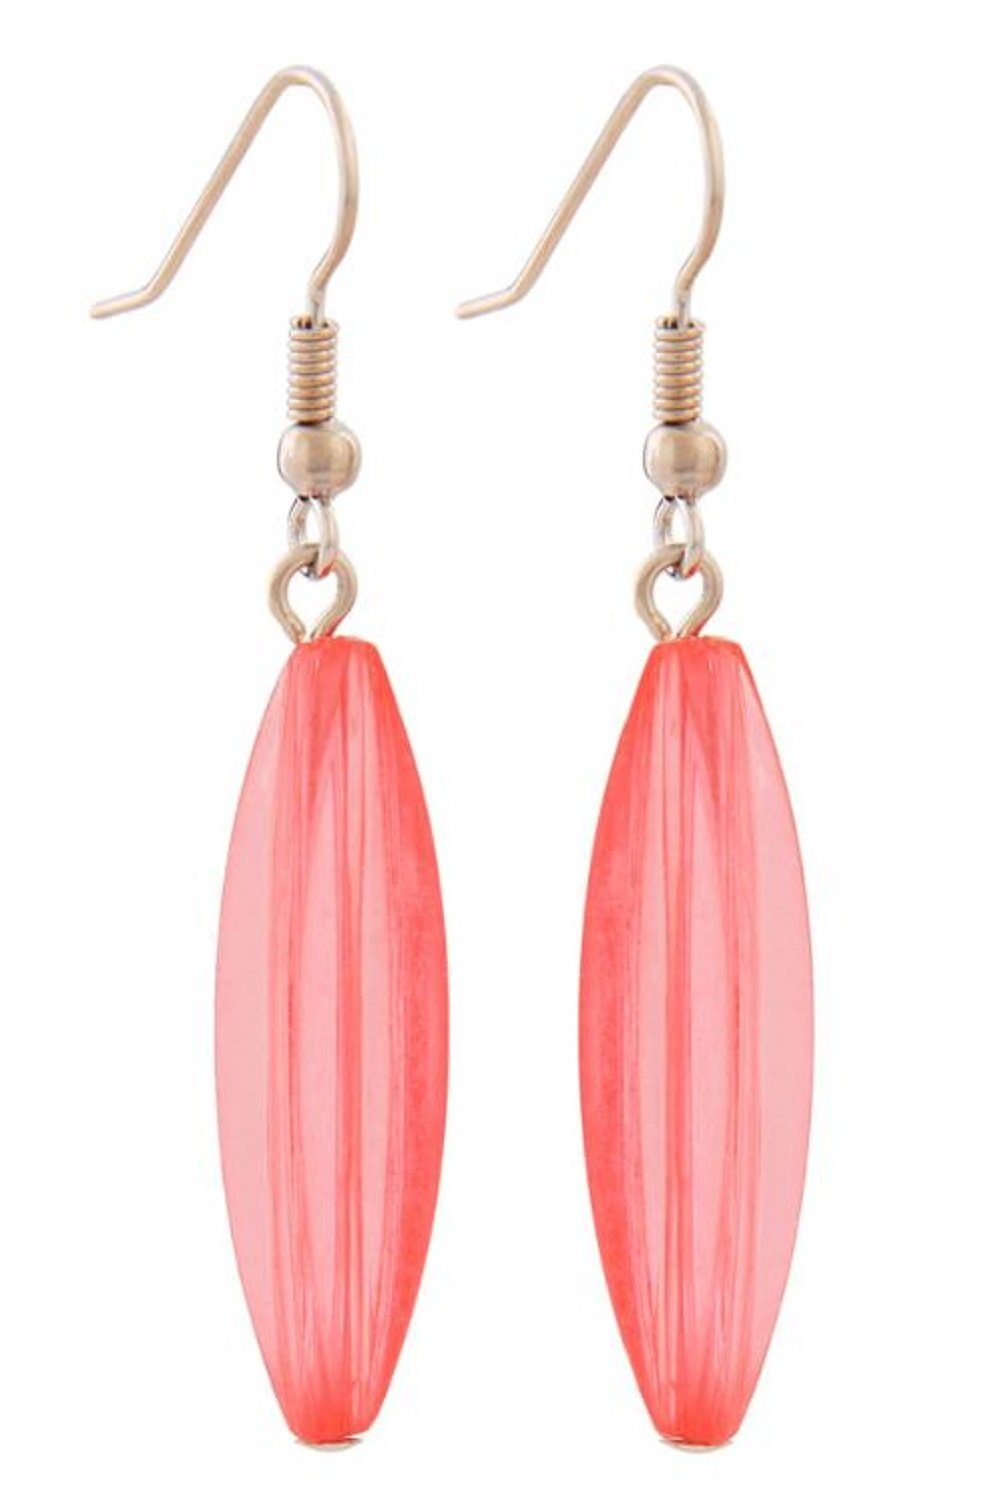 unbespielt Paar Ohrhänger Ohrhaken Ohrringe Rillenolive Kunststoff pink-transparent 30 x 9 mm, Modeschmuck für Damen